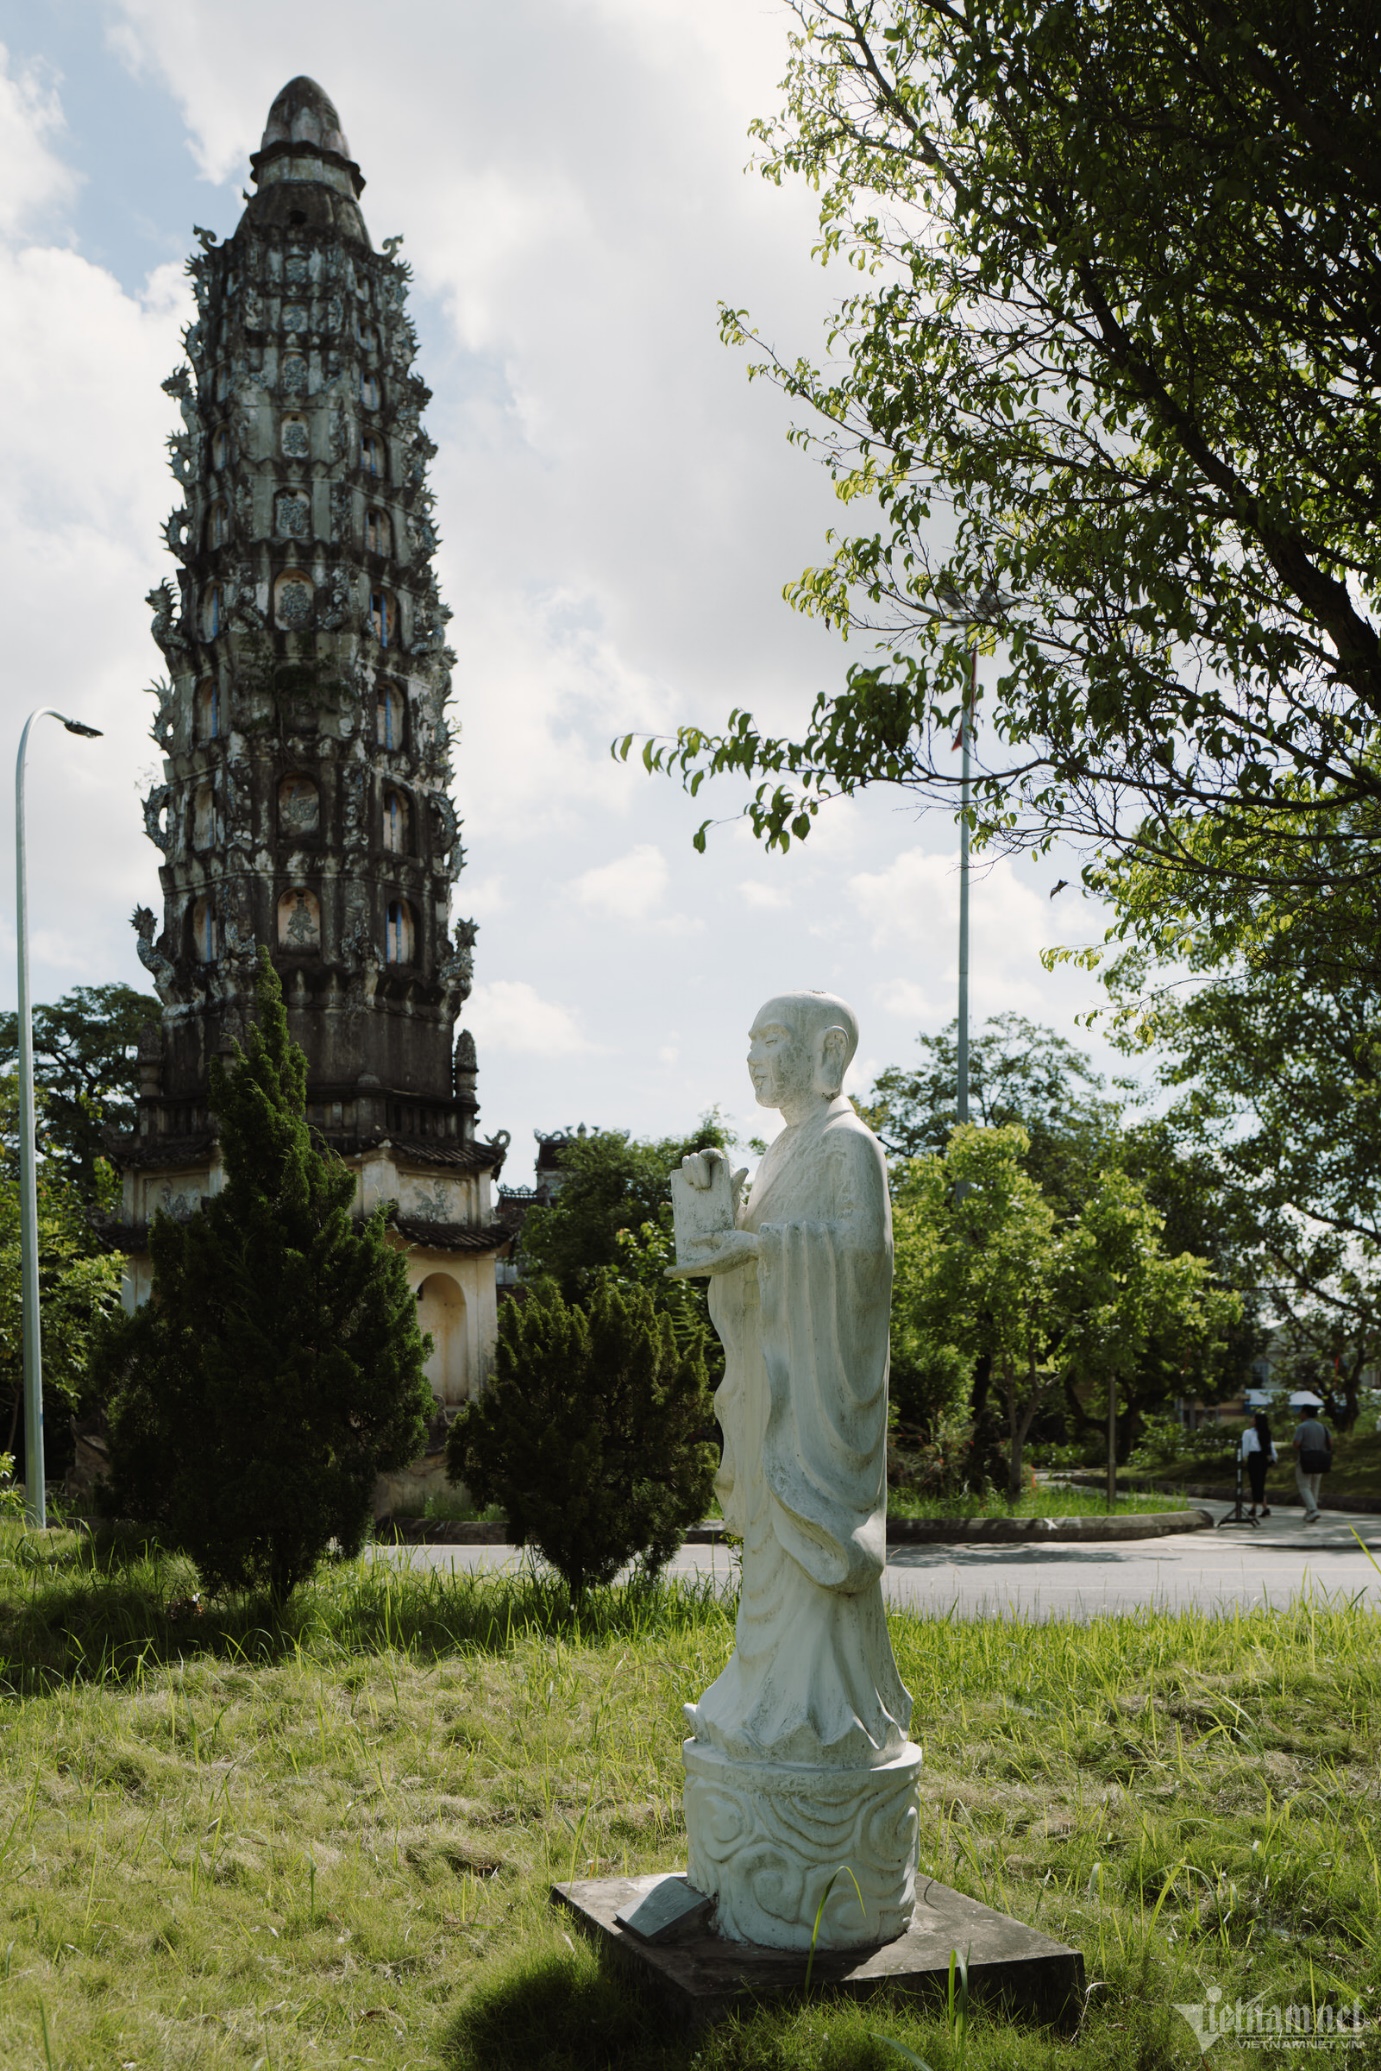 Ngọn tháp 'chín tầng trời' trong ngôi chùa thiêng nổi tiếng Nam Định - 11